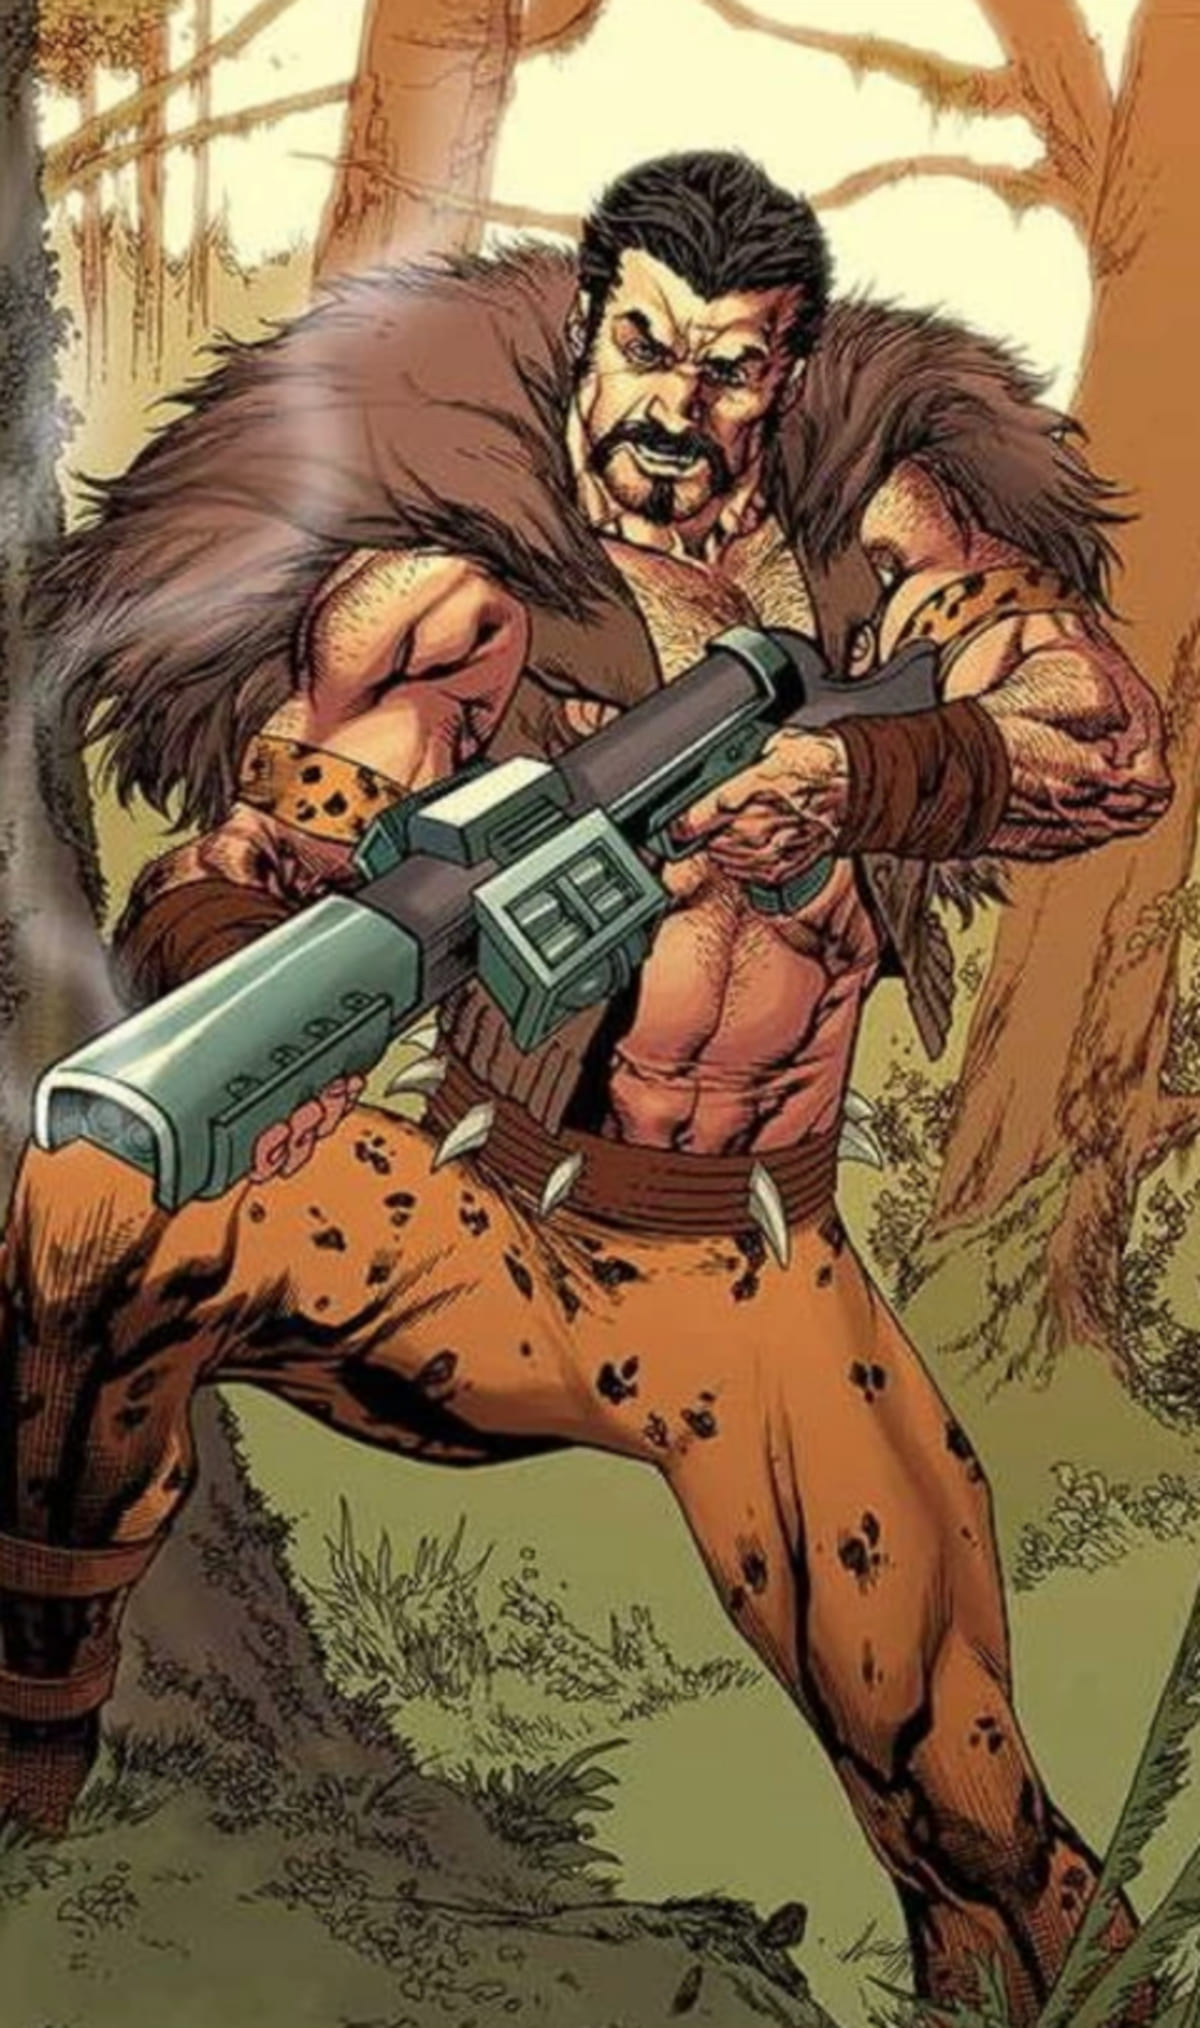 Kraven The Hunter : ソニピ版のマーベル・ユニバースが、自分が殺したスパイダーマンの代わりに悪と戦ったクレイヴン・ザ